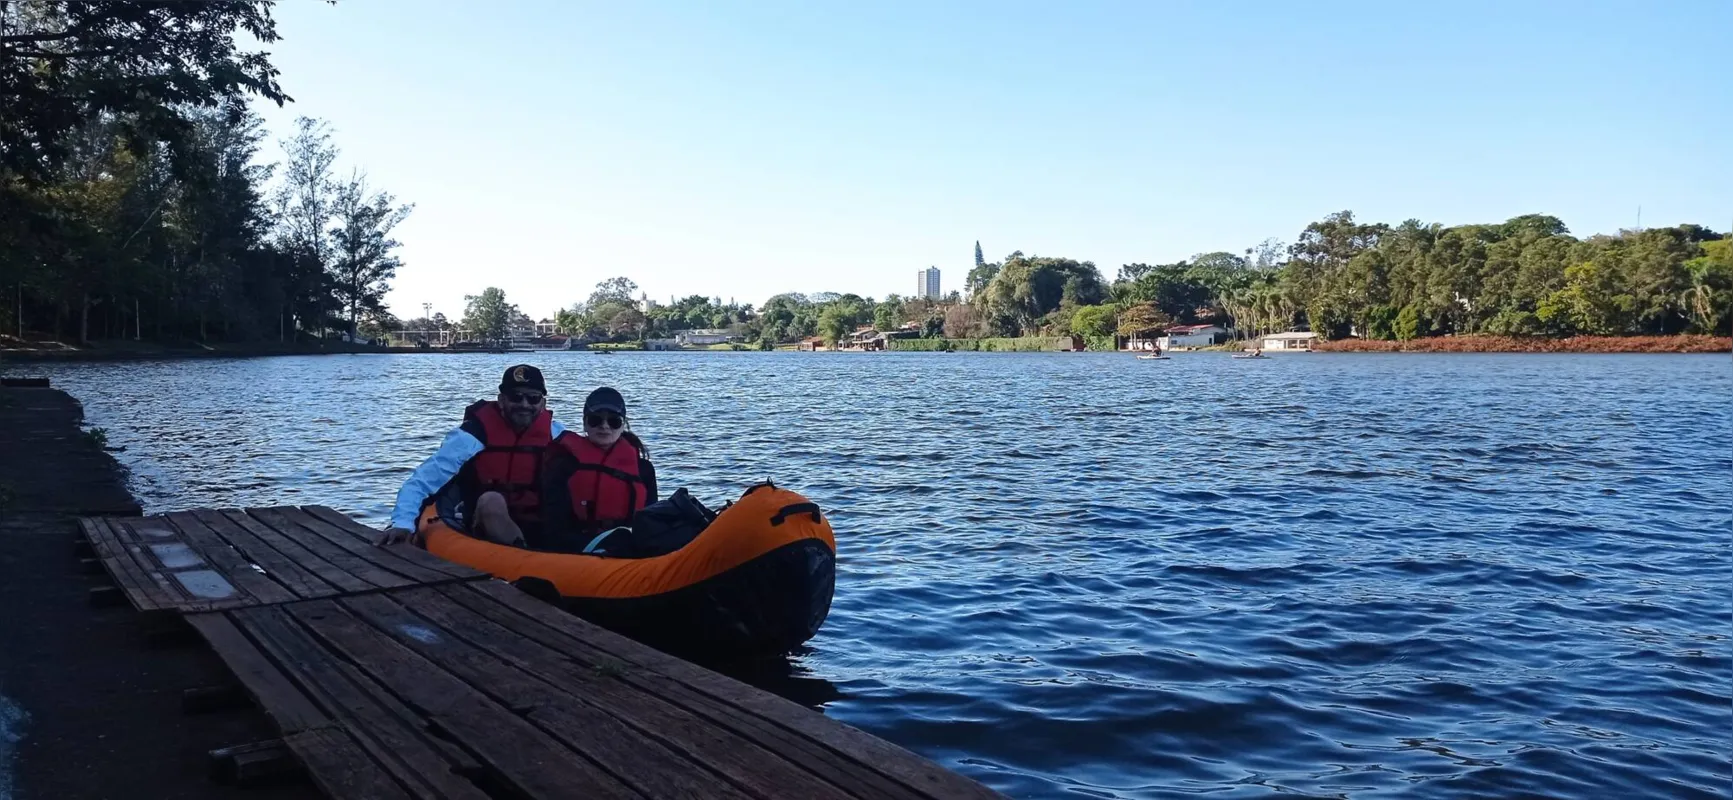 Nicole Lopes e Edson Aoki foram alguns dos primeiros a colocar a embarcação na água para o passeio.